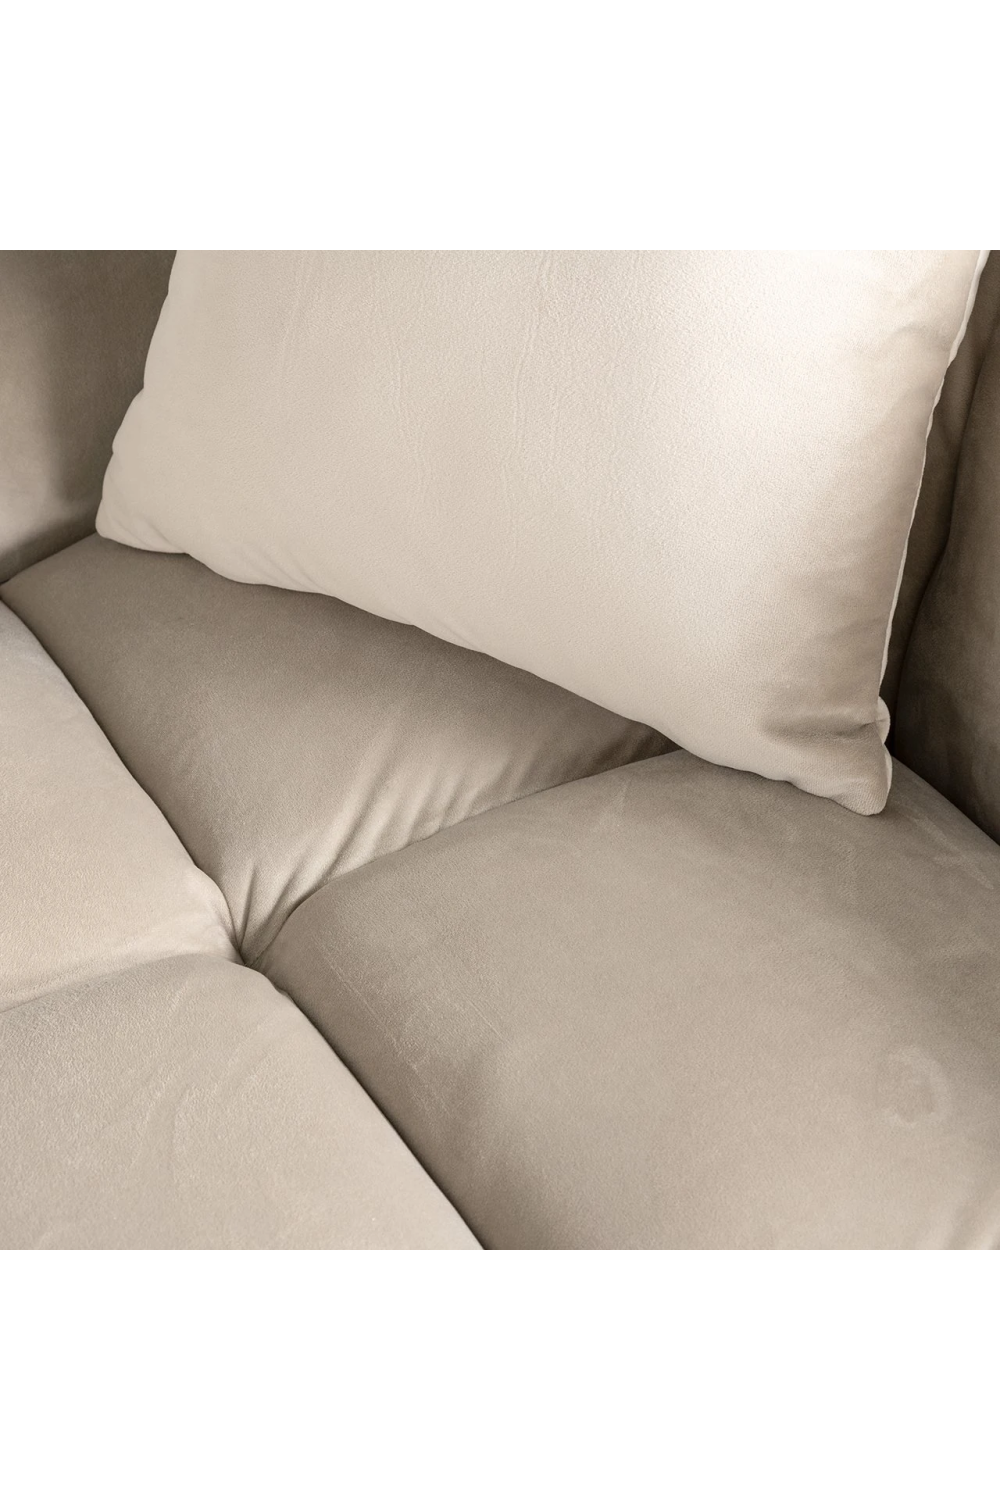 Khaki Velvet Channeled Sofa | OROA Cube | Oroa.com